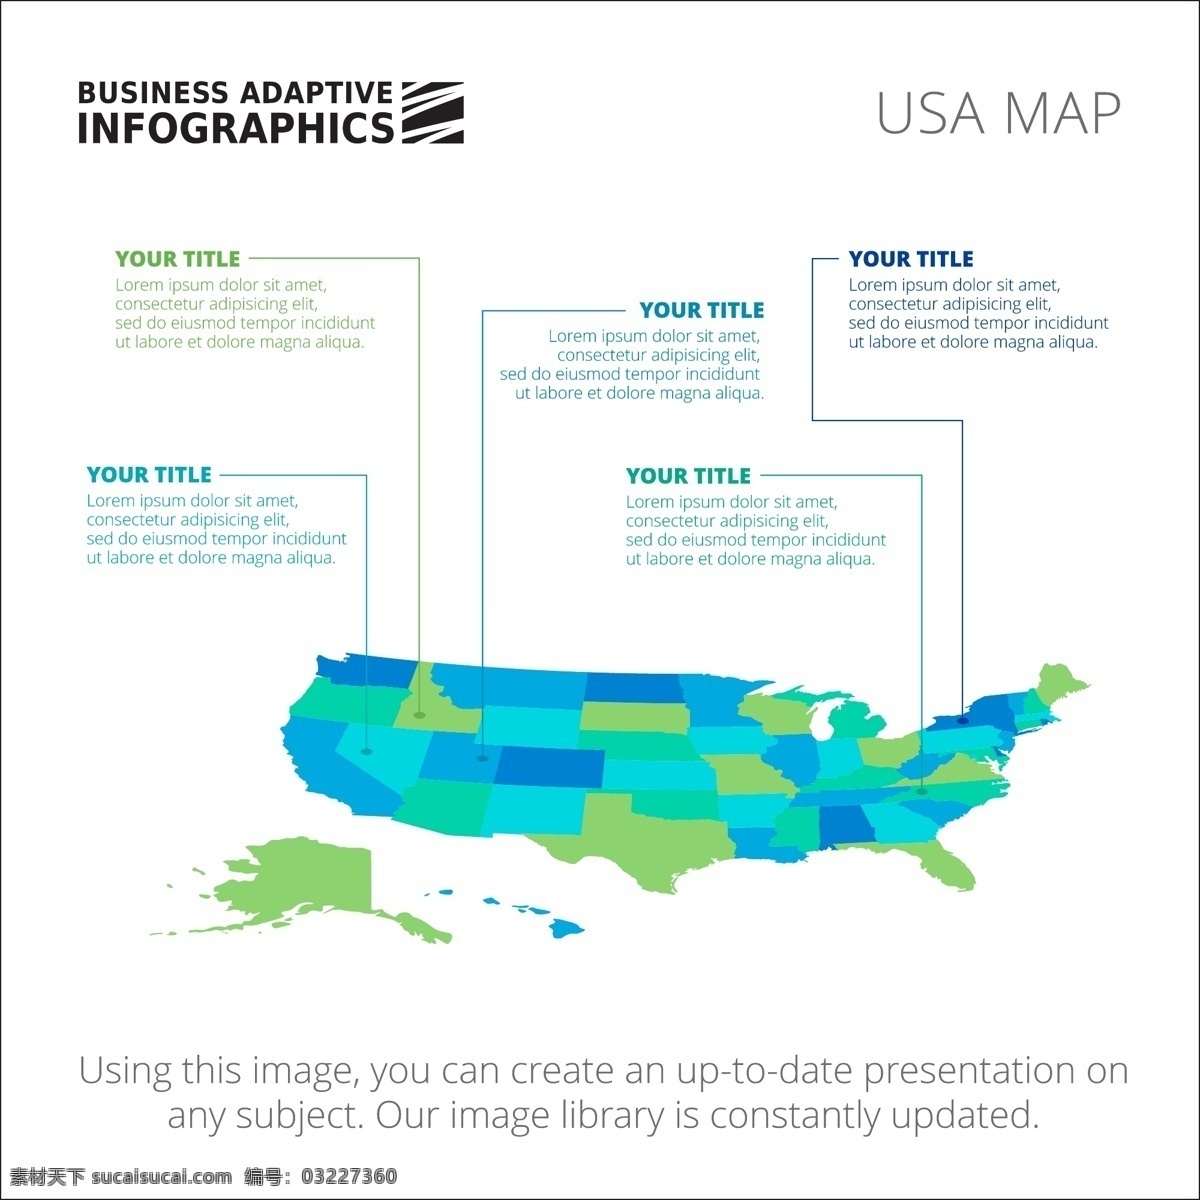 图表模板设计 图表 业务 地图 图形 模板 数字 信息 数据 要素 信息图表元素 美国 颜色 商业图表 infography 图表模板